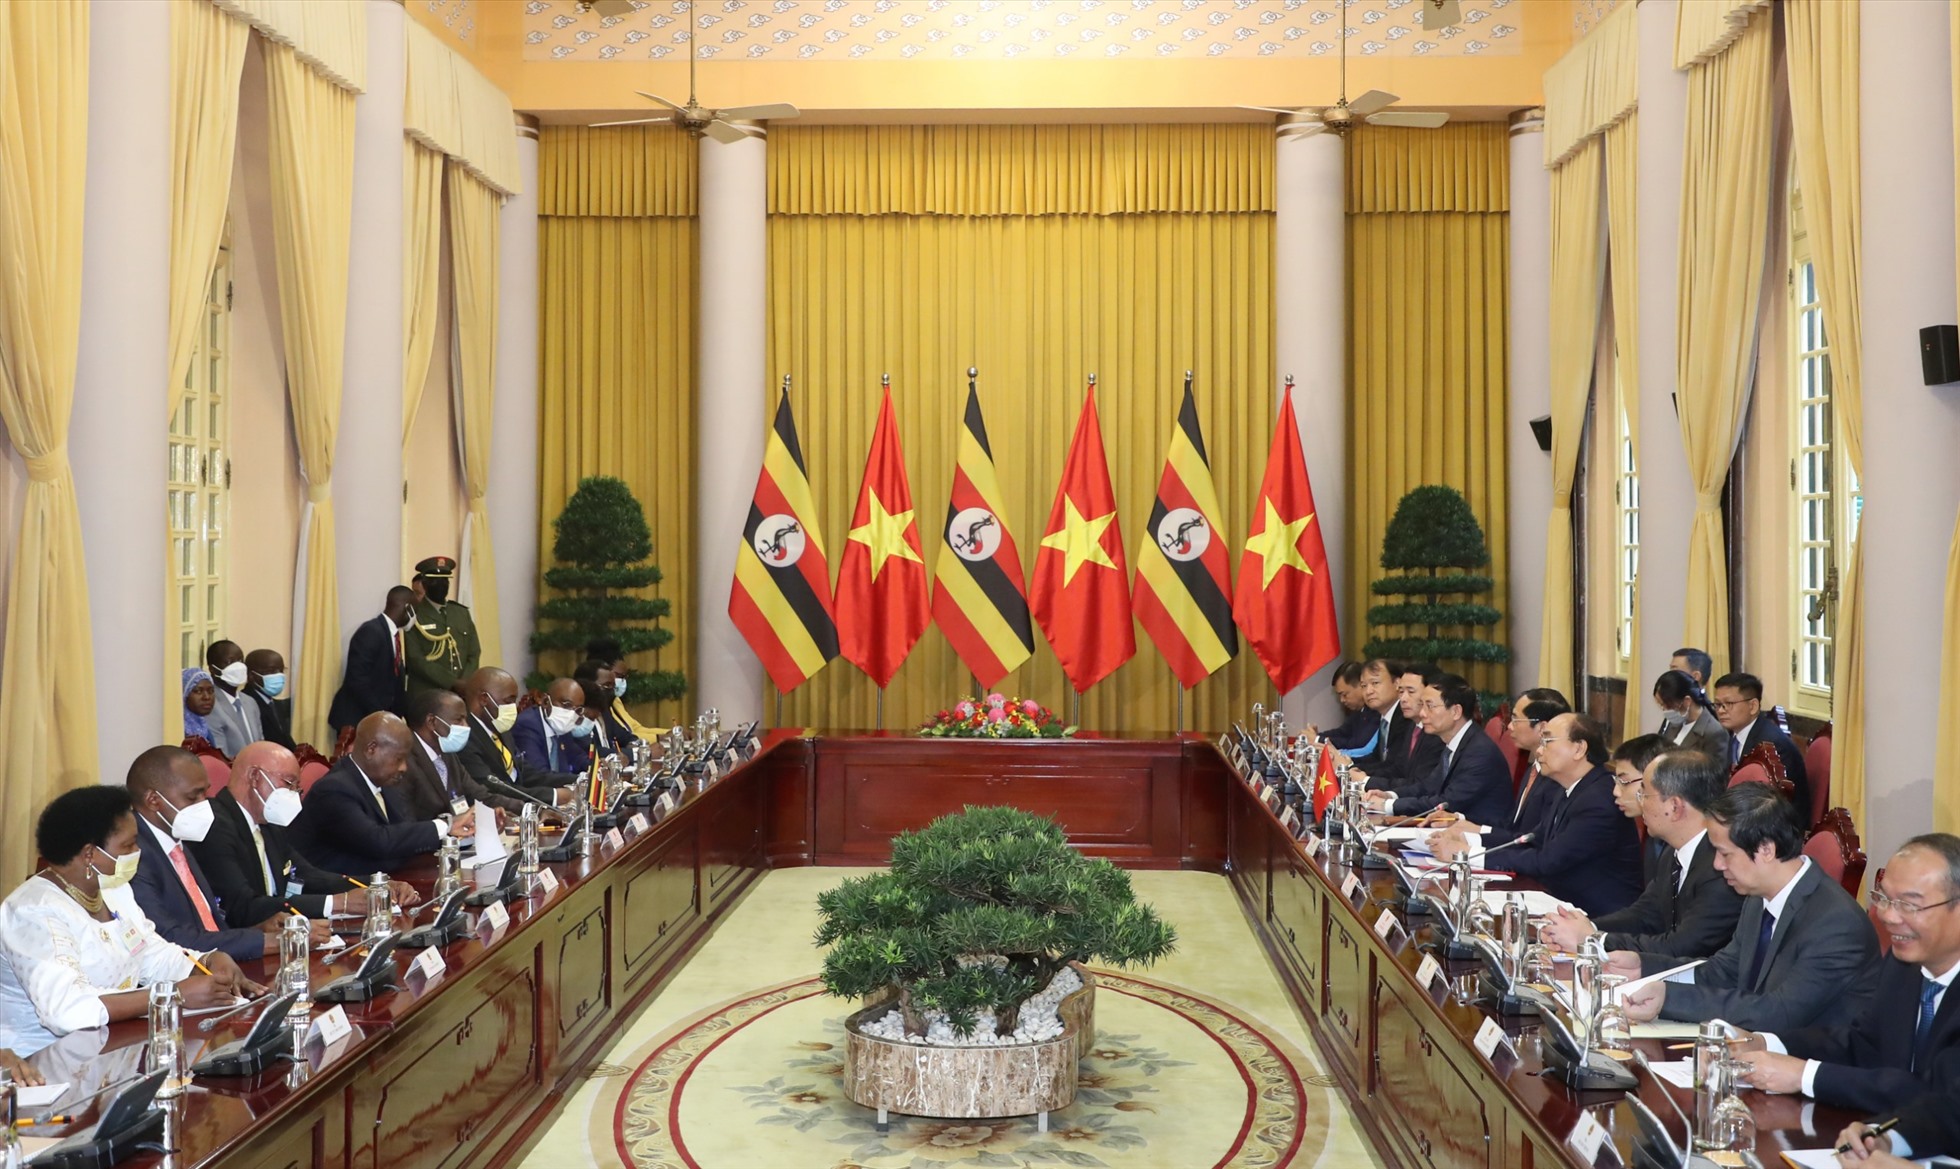 Chuyến thăm cấp nguyên thủ đầu tiên giữa hai nước sẽ là điểm nhấn quan trọng trong quan hệ song phương Việt Nam-Uganda; mở ra nhiều không gian hợp tác trên các lĩnh vực giữa hai quốc gia Á-Phi trong tương lai. Ảnh: Hải Nguyễn